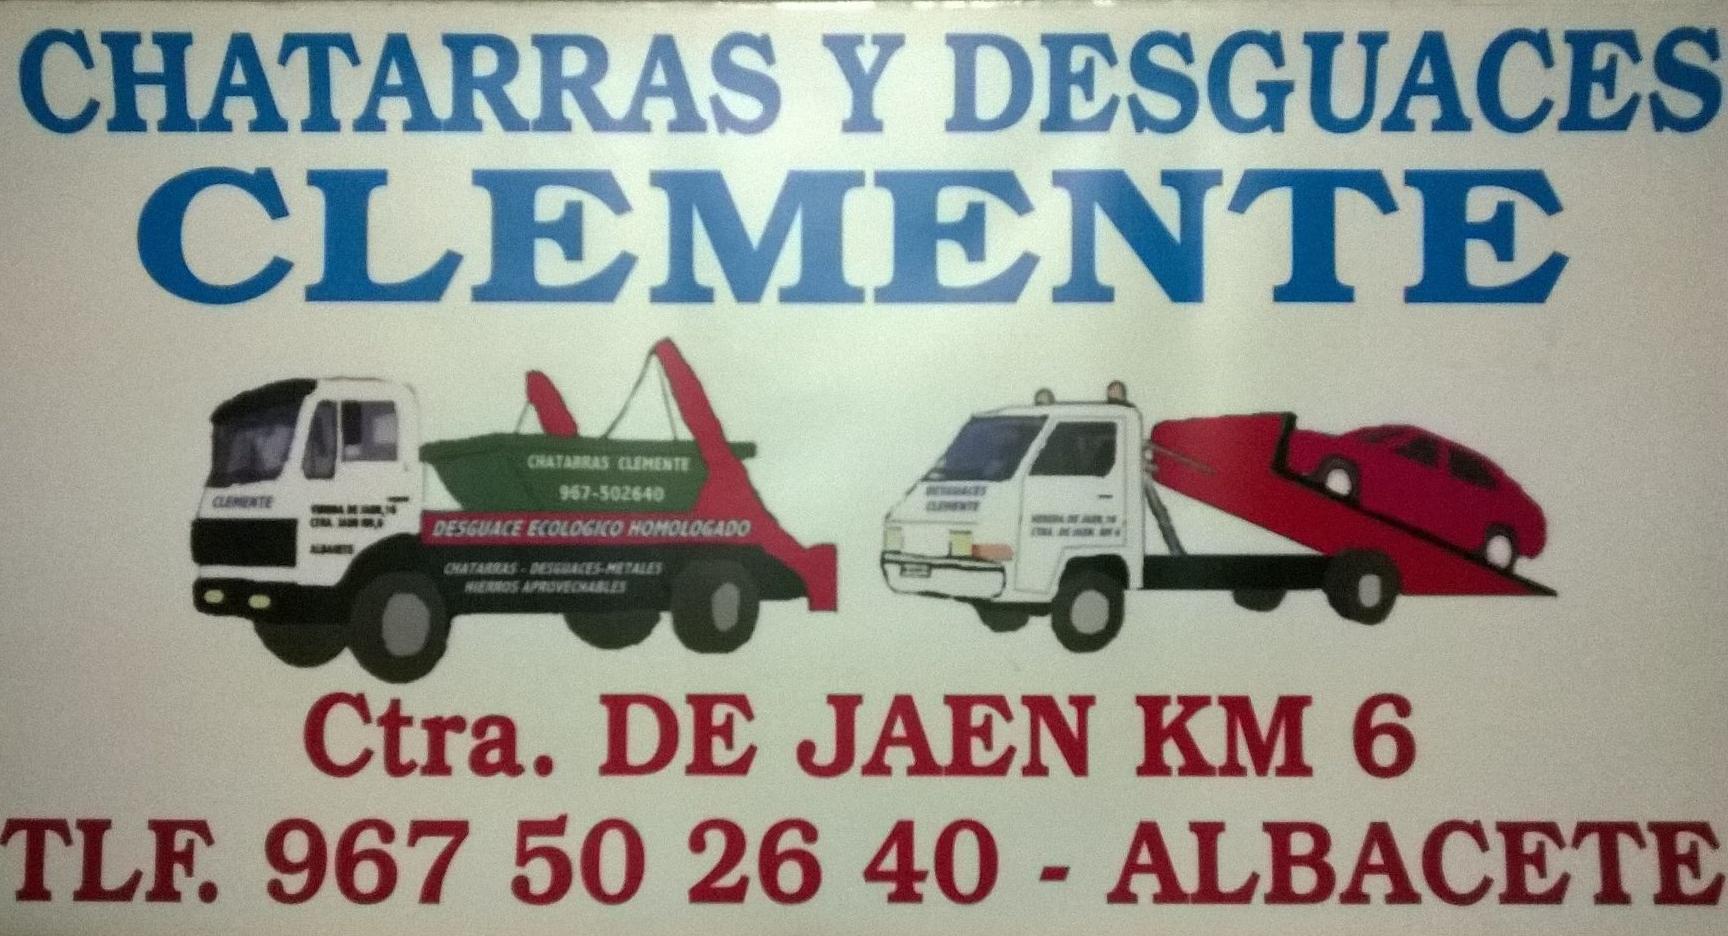 Logotipo desguaces clemente de Albacete